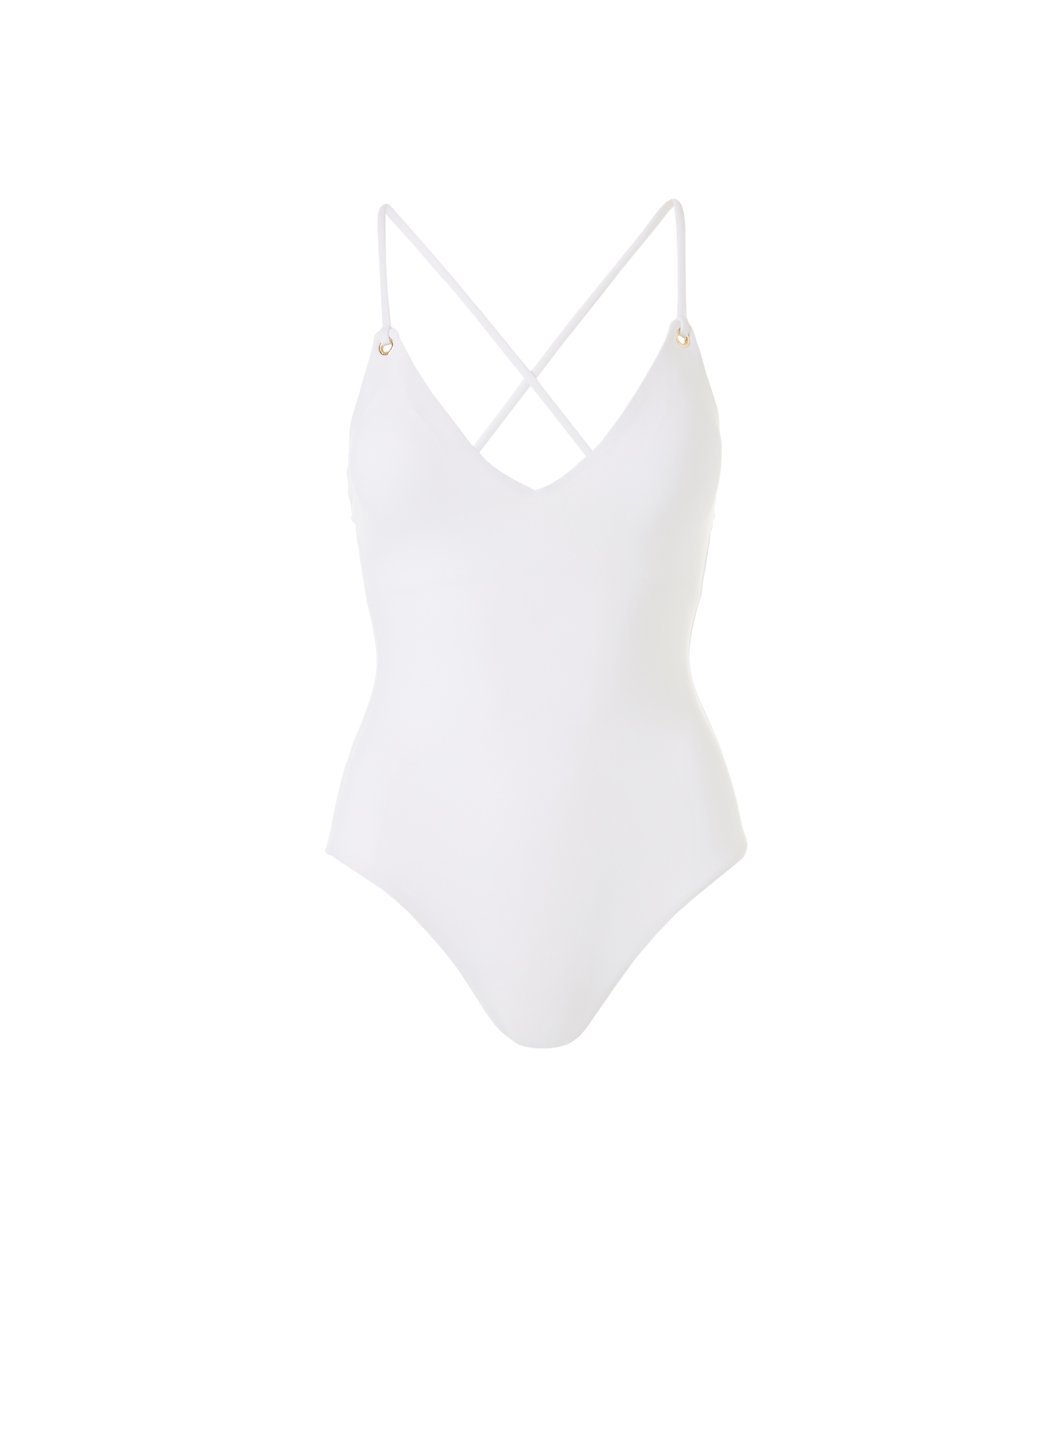 Catalina White Swimsuit